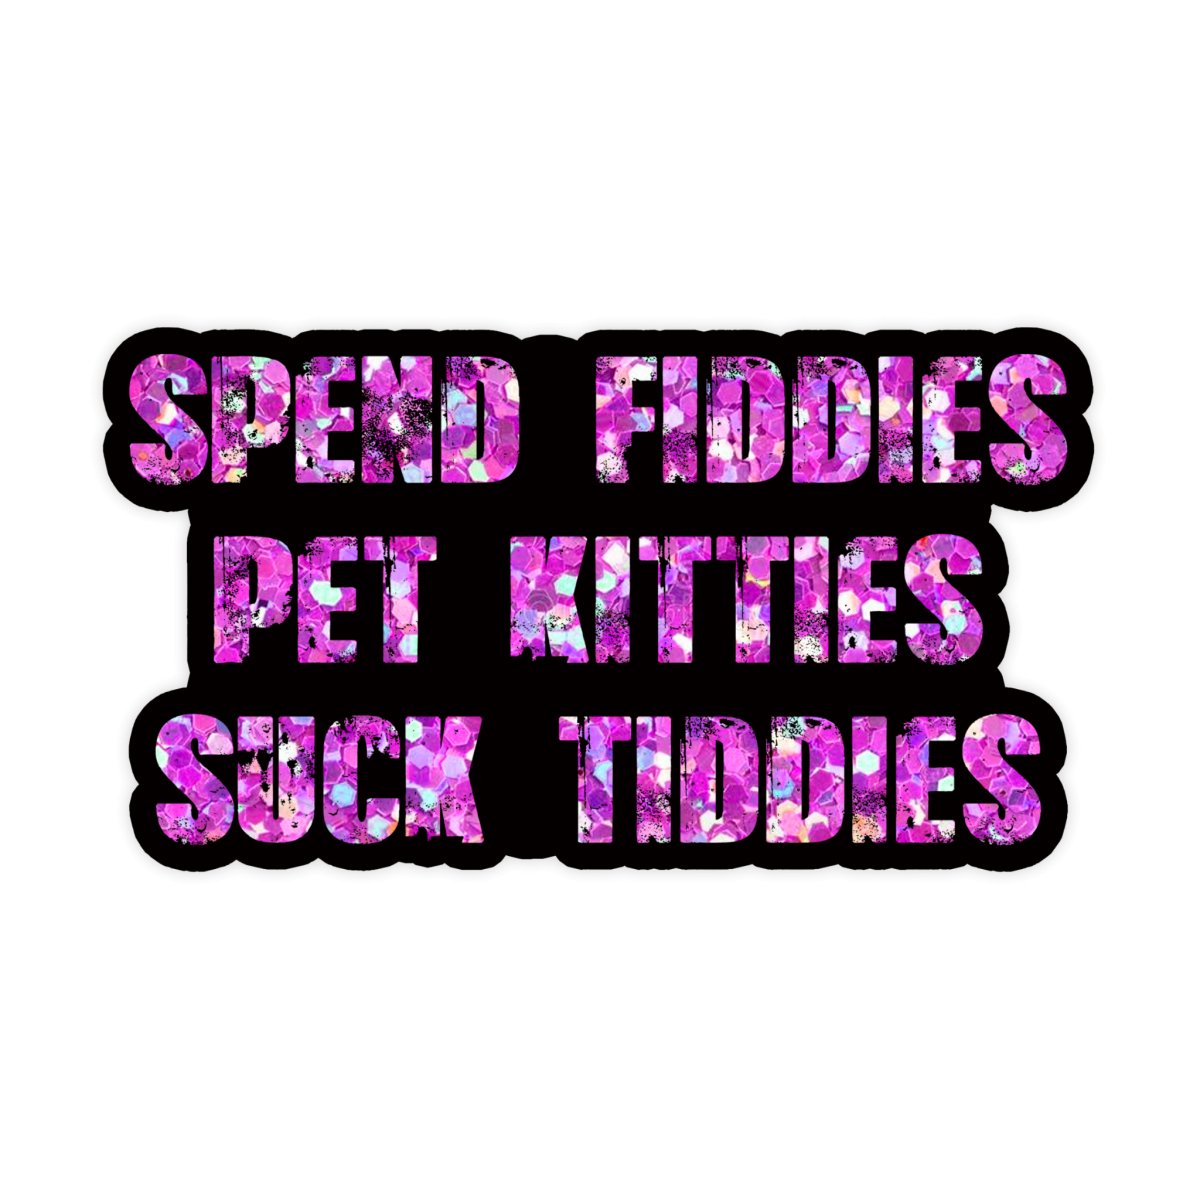 Spend Fiddies, Pet Kitties, Suck Tiddies Sticker - stickerbullSpend Fiddies, Pet Kitties, Suck Tiddies StickerRetail StickerstickerbullstickerbullTaylor_SpendFiddies [#162]Spend Fiddies, Pet Kitties, Suck Tiddies Sticker